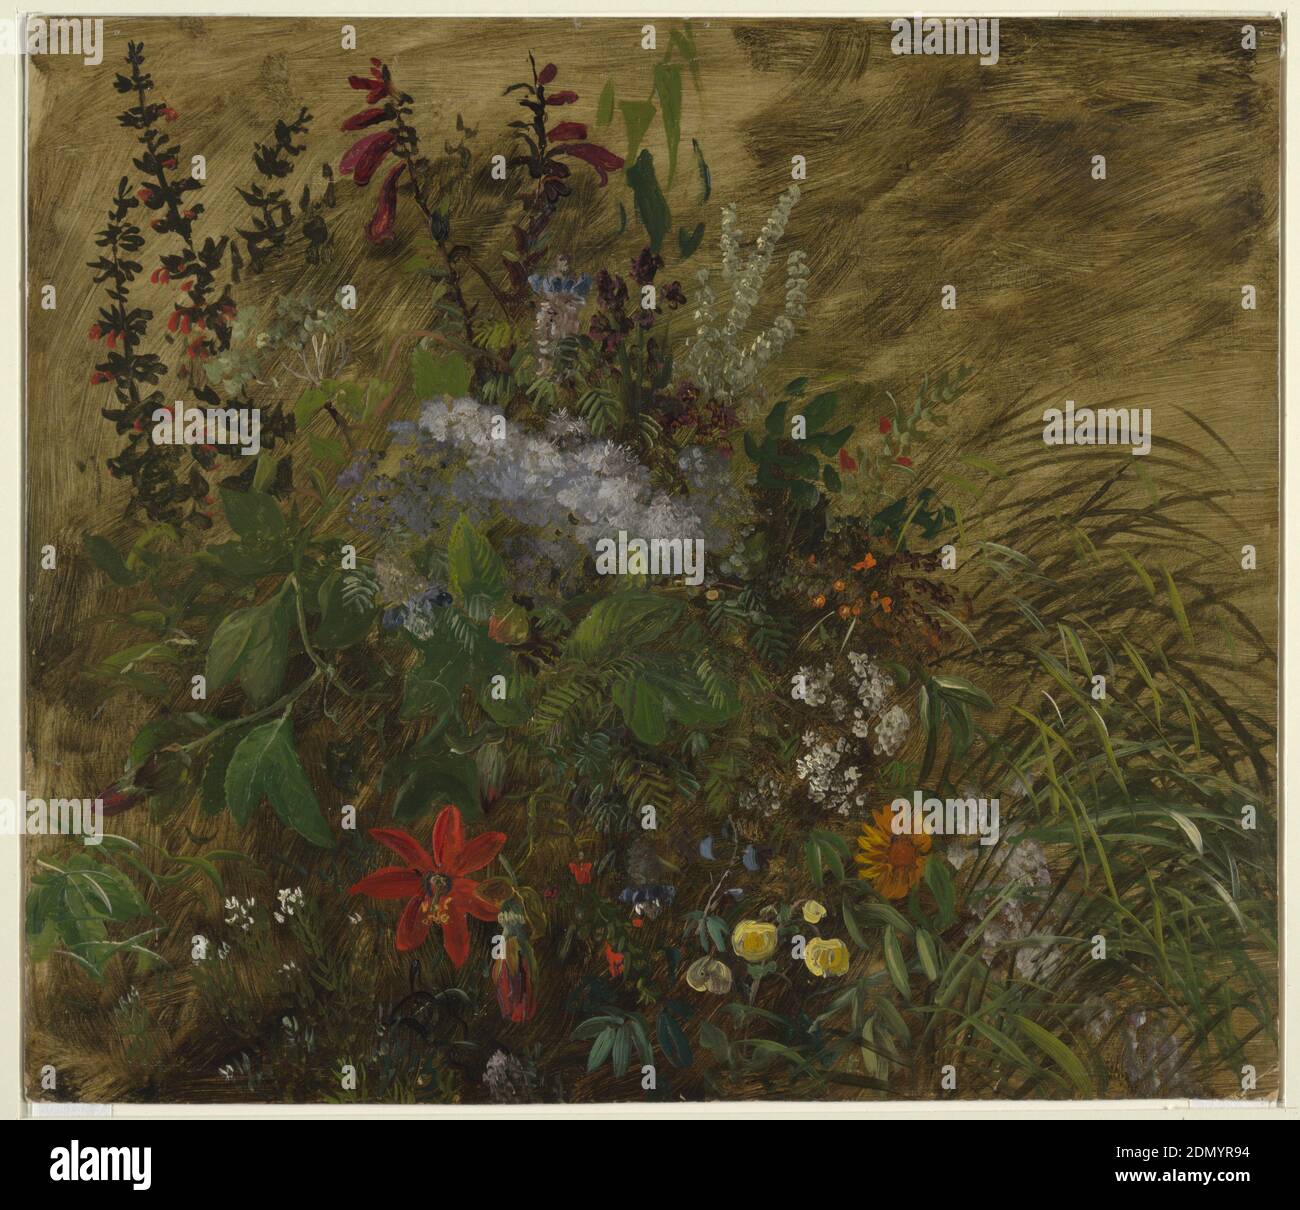 Fleurs en Jamaïque, peinture au pinceau et à l'huile sur carton, ÉTUDE botanique d'un groupe de fleurs sauvages dans le paysage jamaïcain, avril–août 1865, études de la nature, dessin Banque D'Images